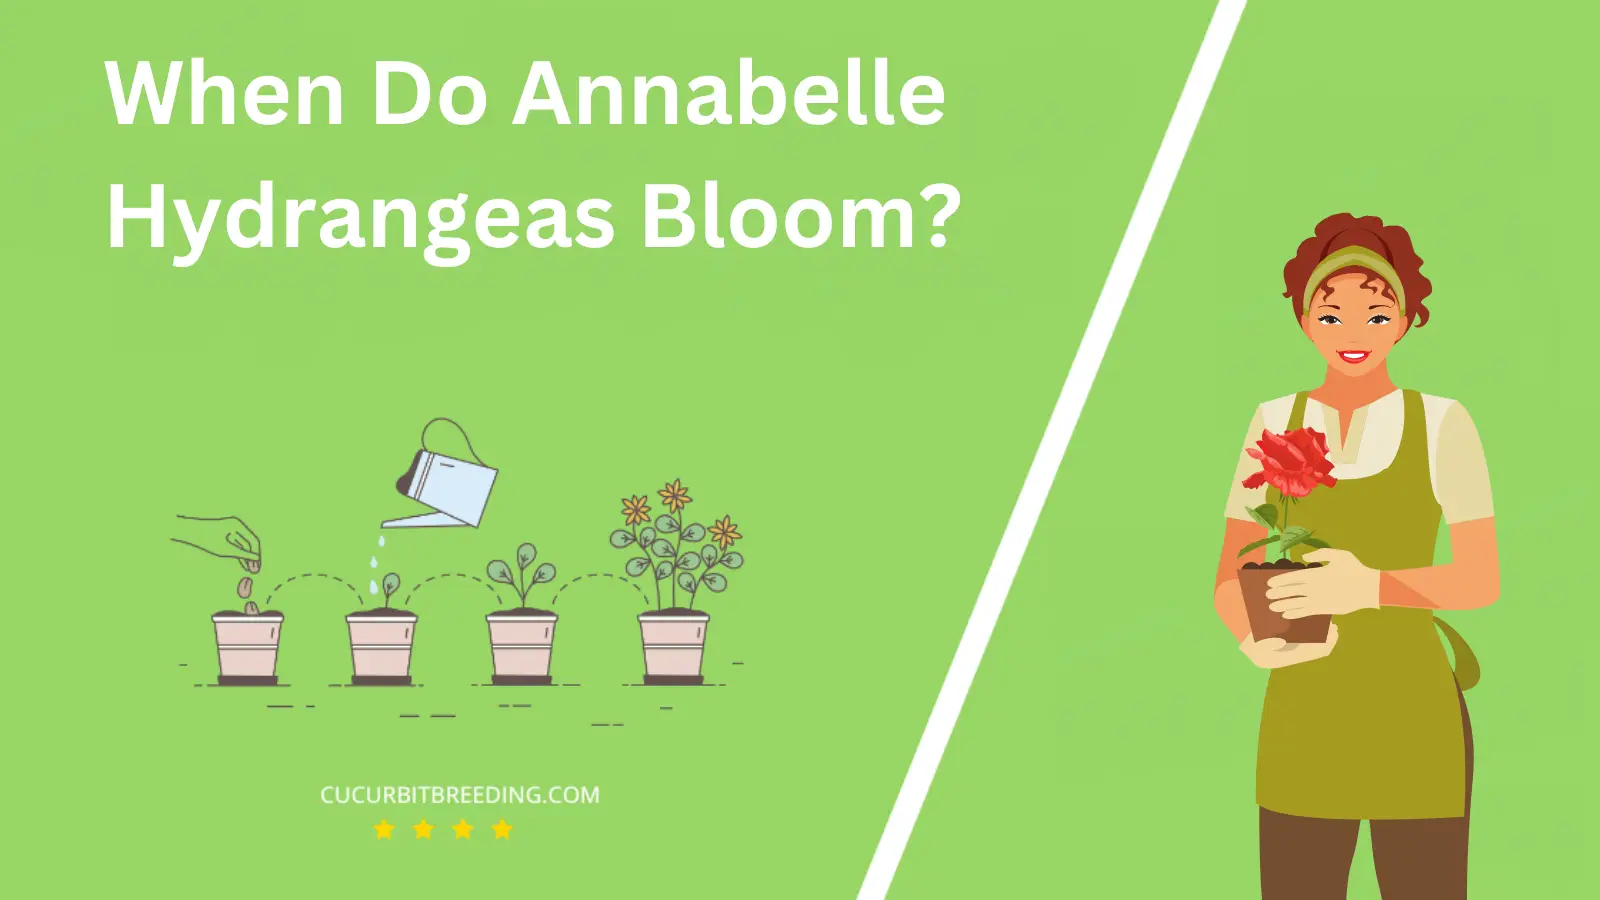 When Do Annabelle Hydrangeas Bloom?